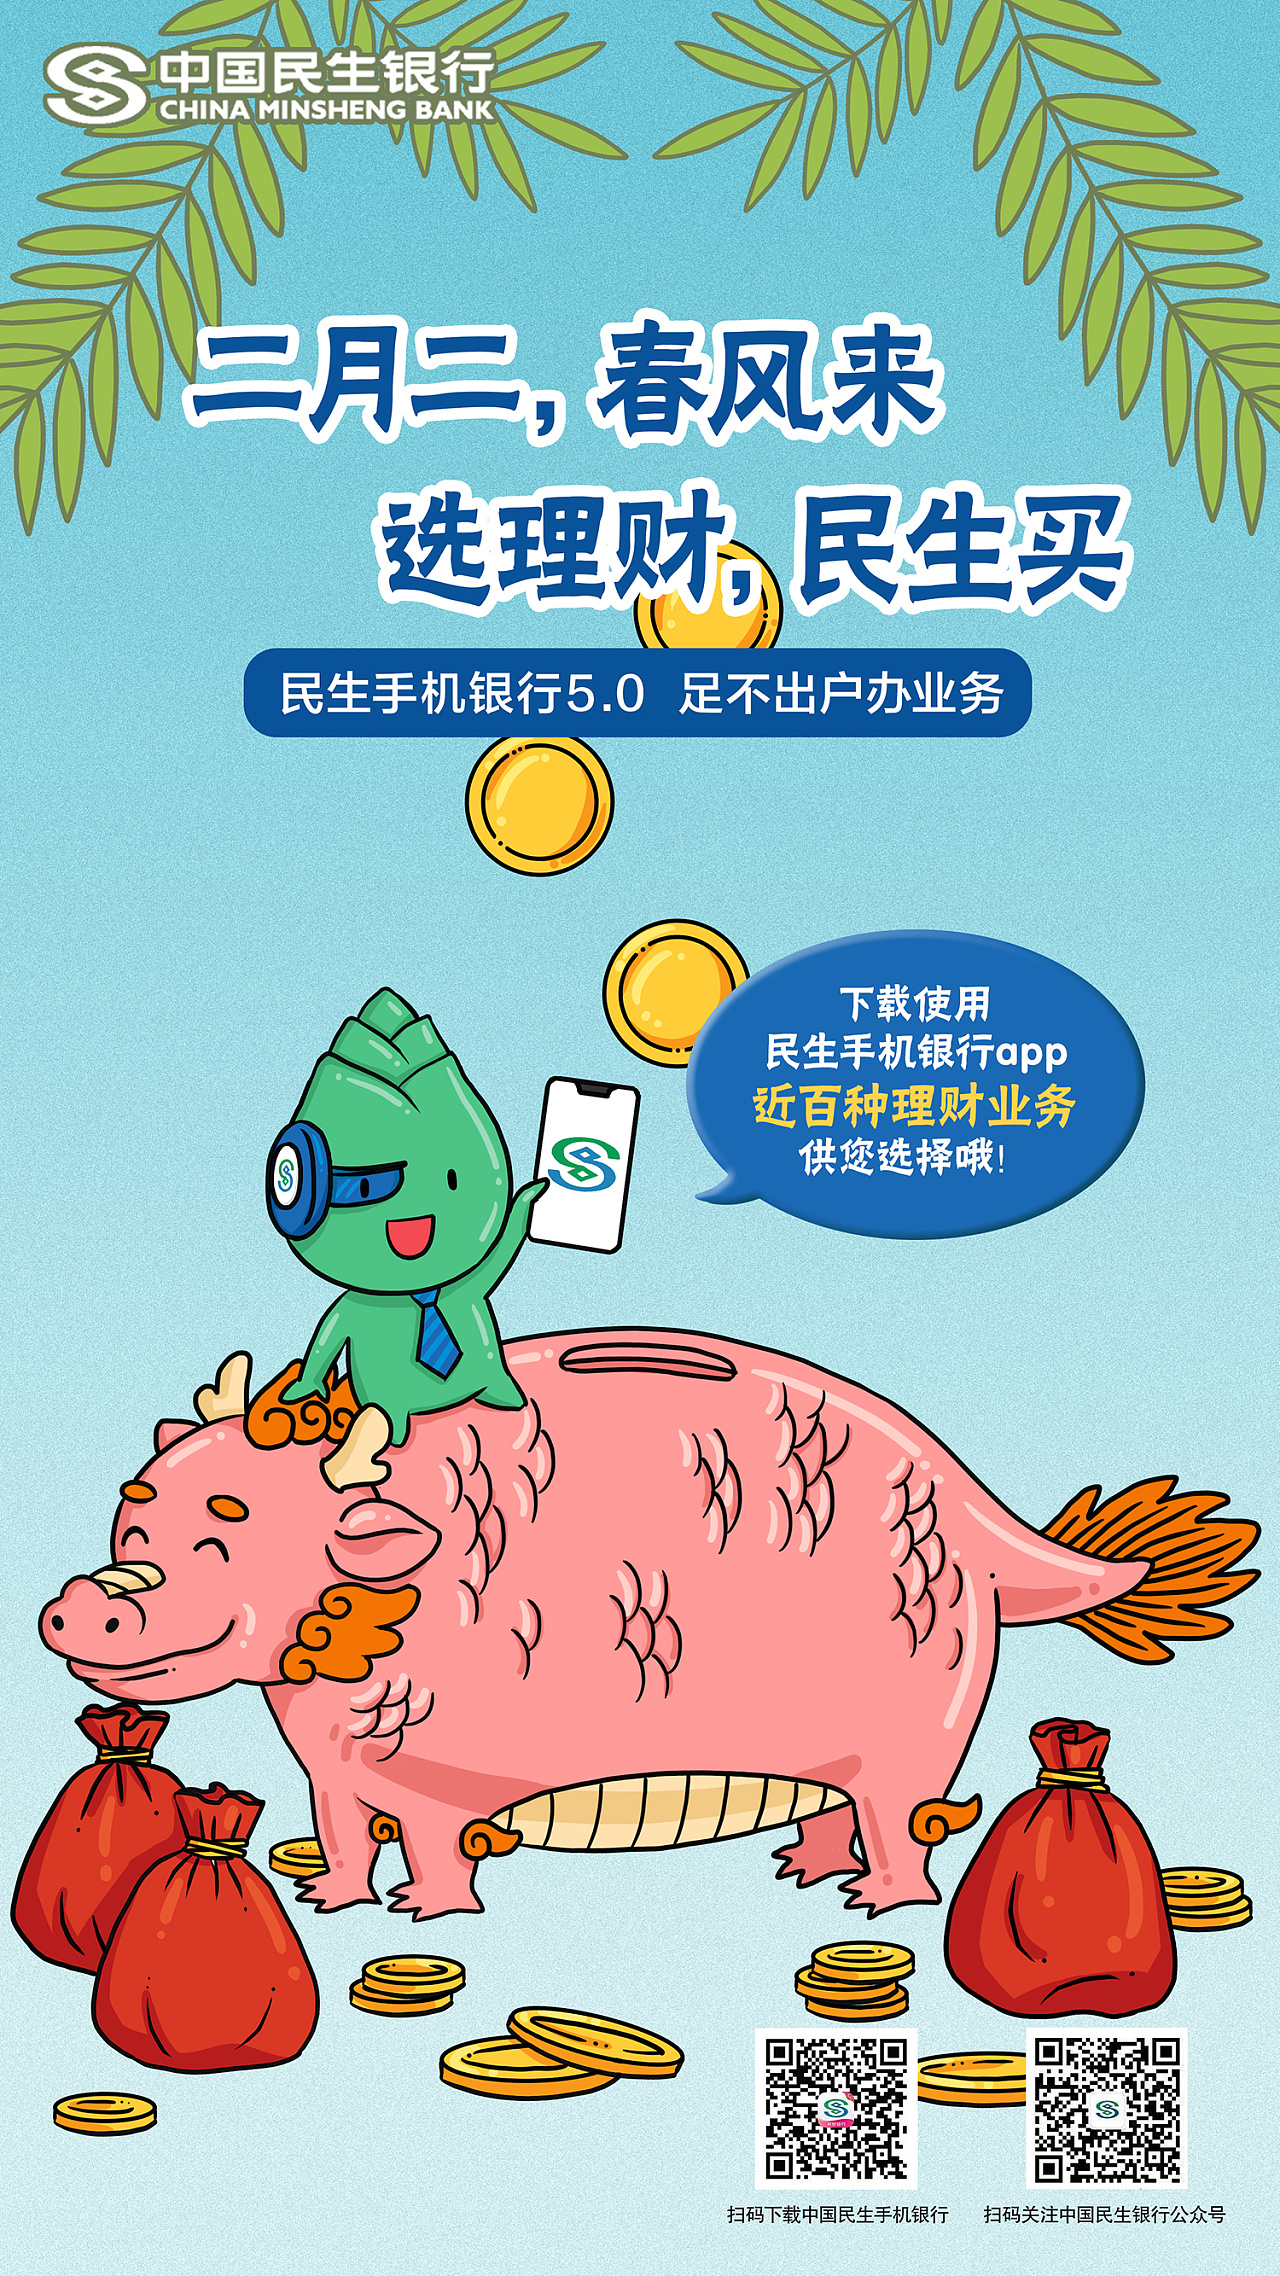 【练习】中国民生银行海报